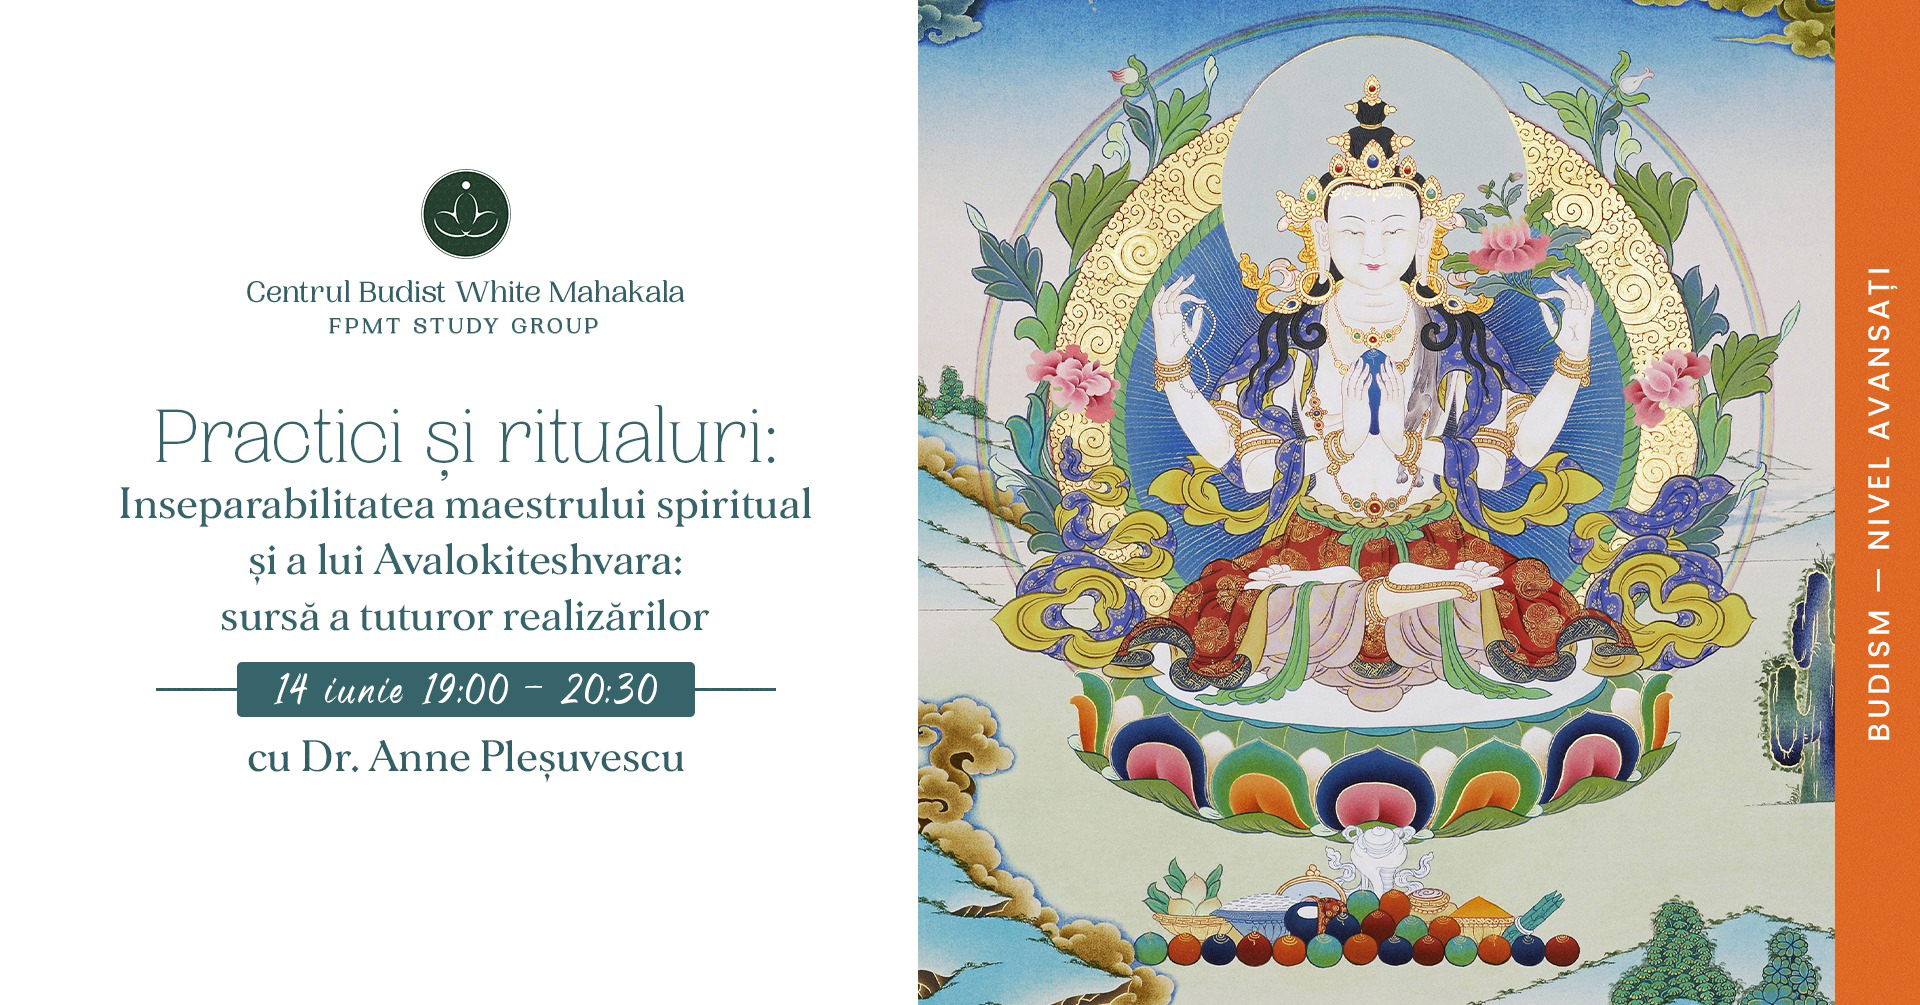 PRACTICI SI RITUALURI BUDISTE – Inseparabilitatea maestrului spiritual și a lui Avalokiteshvara